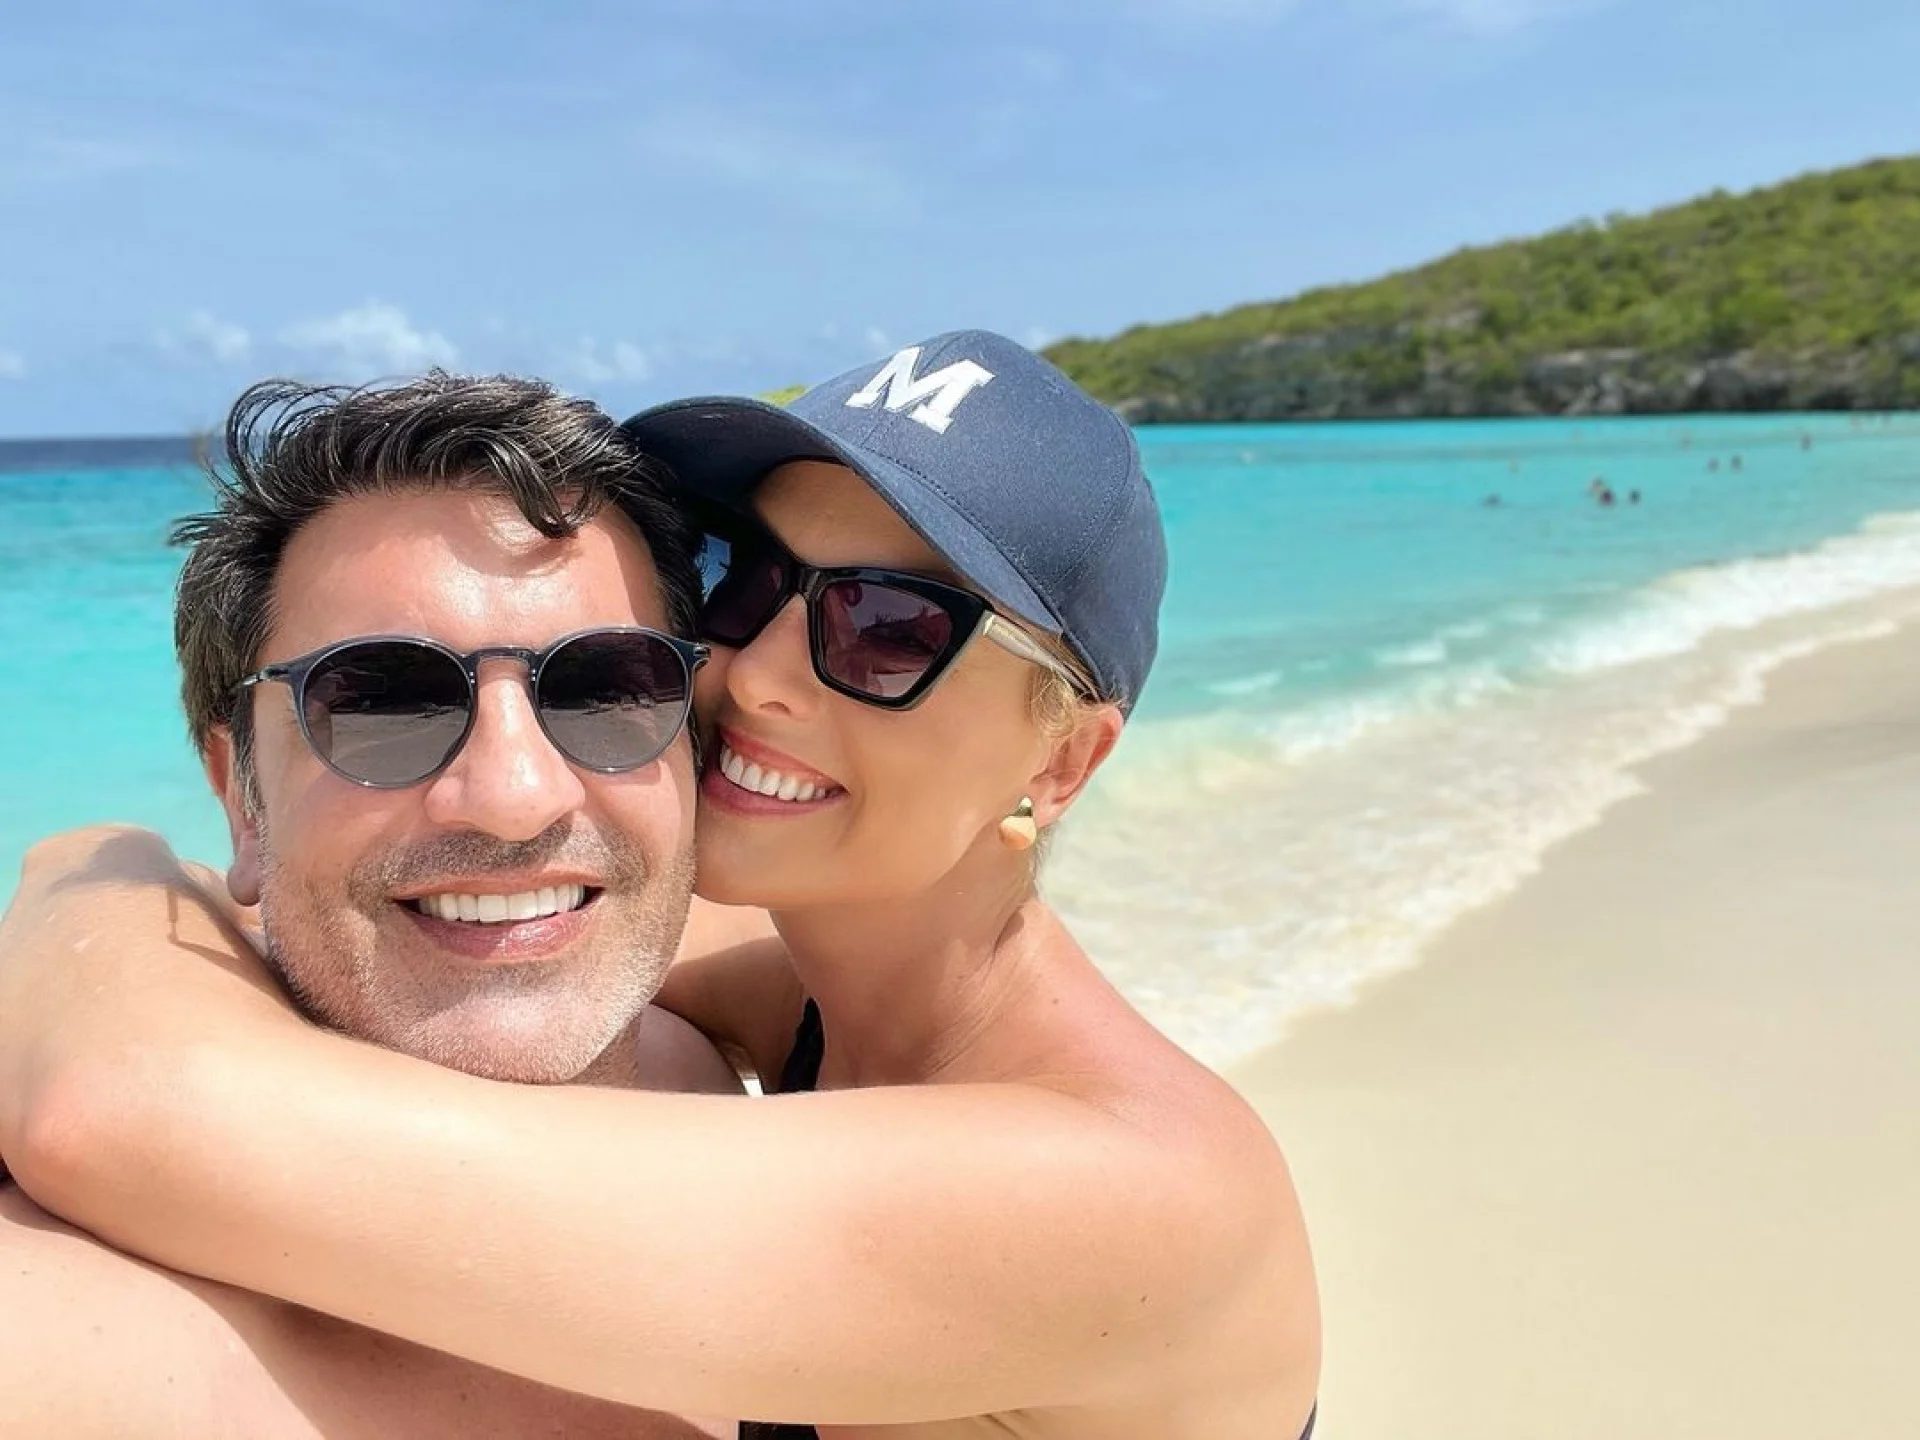 Saiba o valor da diária no hotel poderoso que Ana Hickmann e Edu Guedes curtem férias em Curaçao